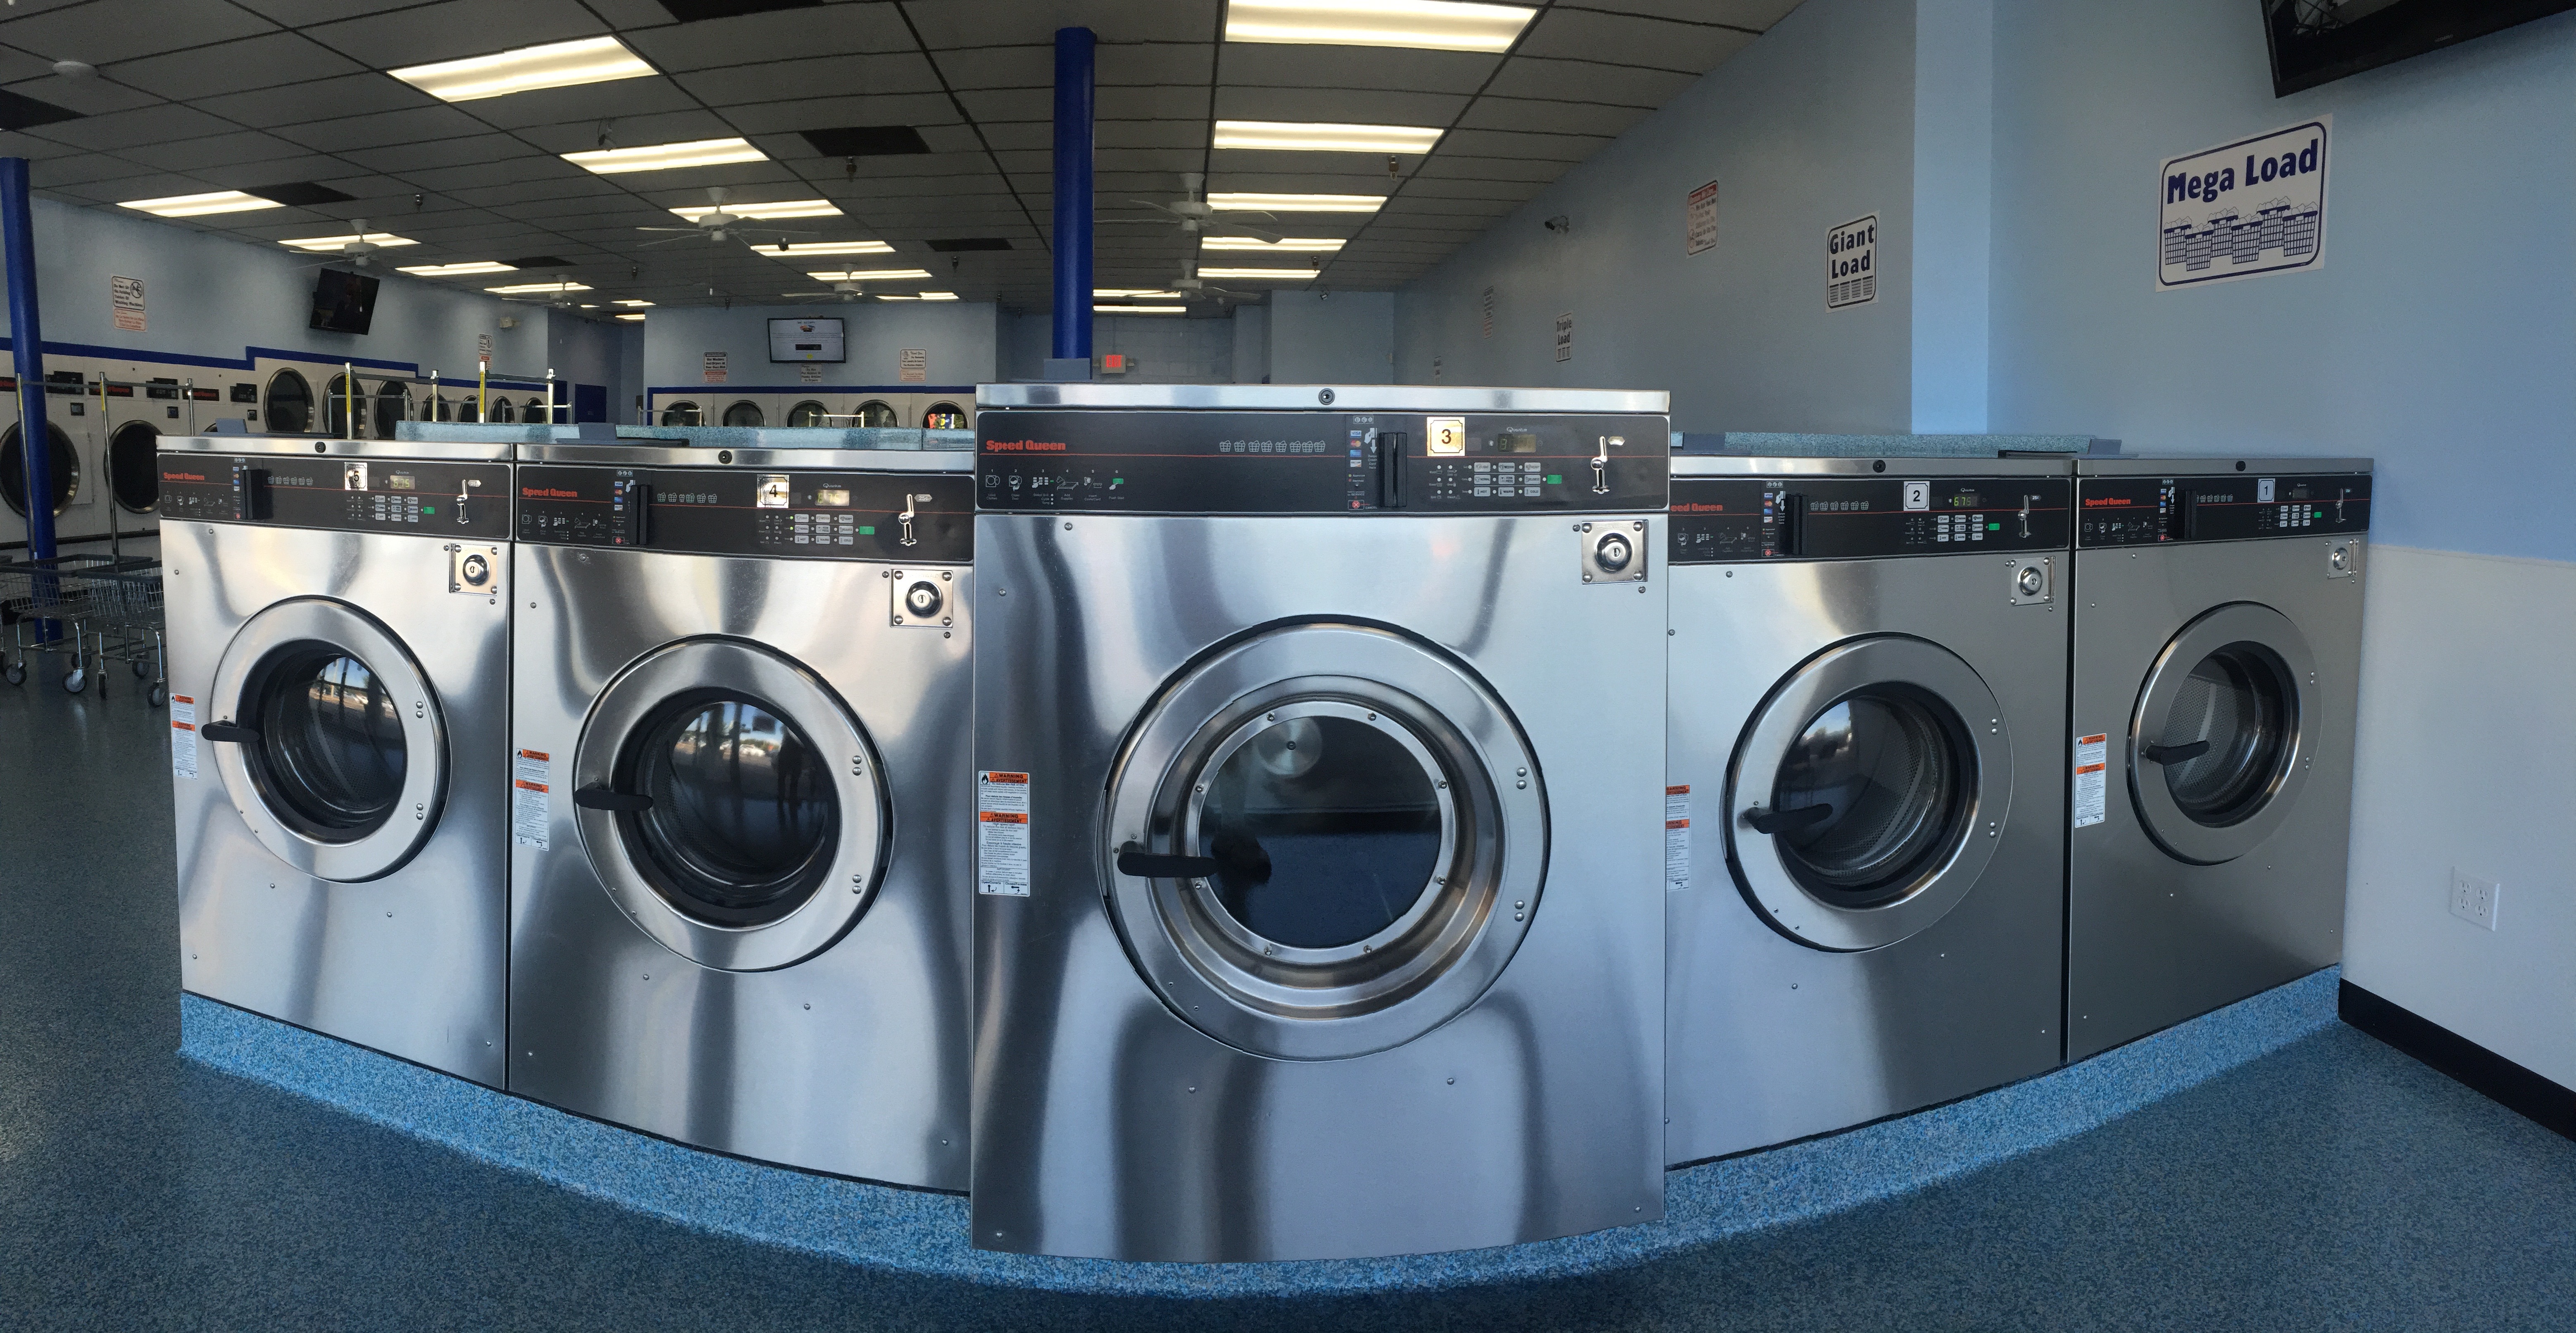 Large Washing Machines